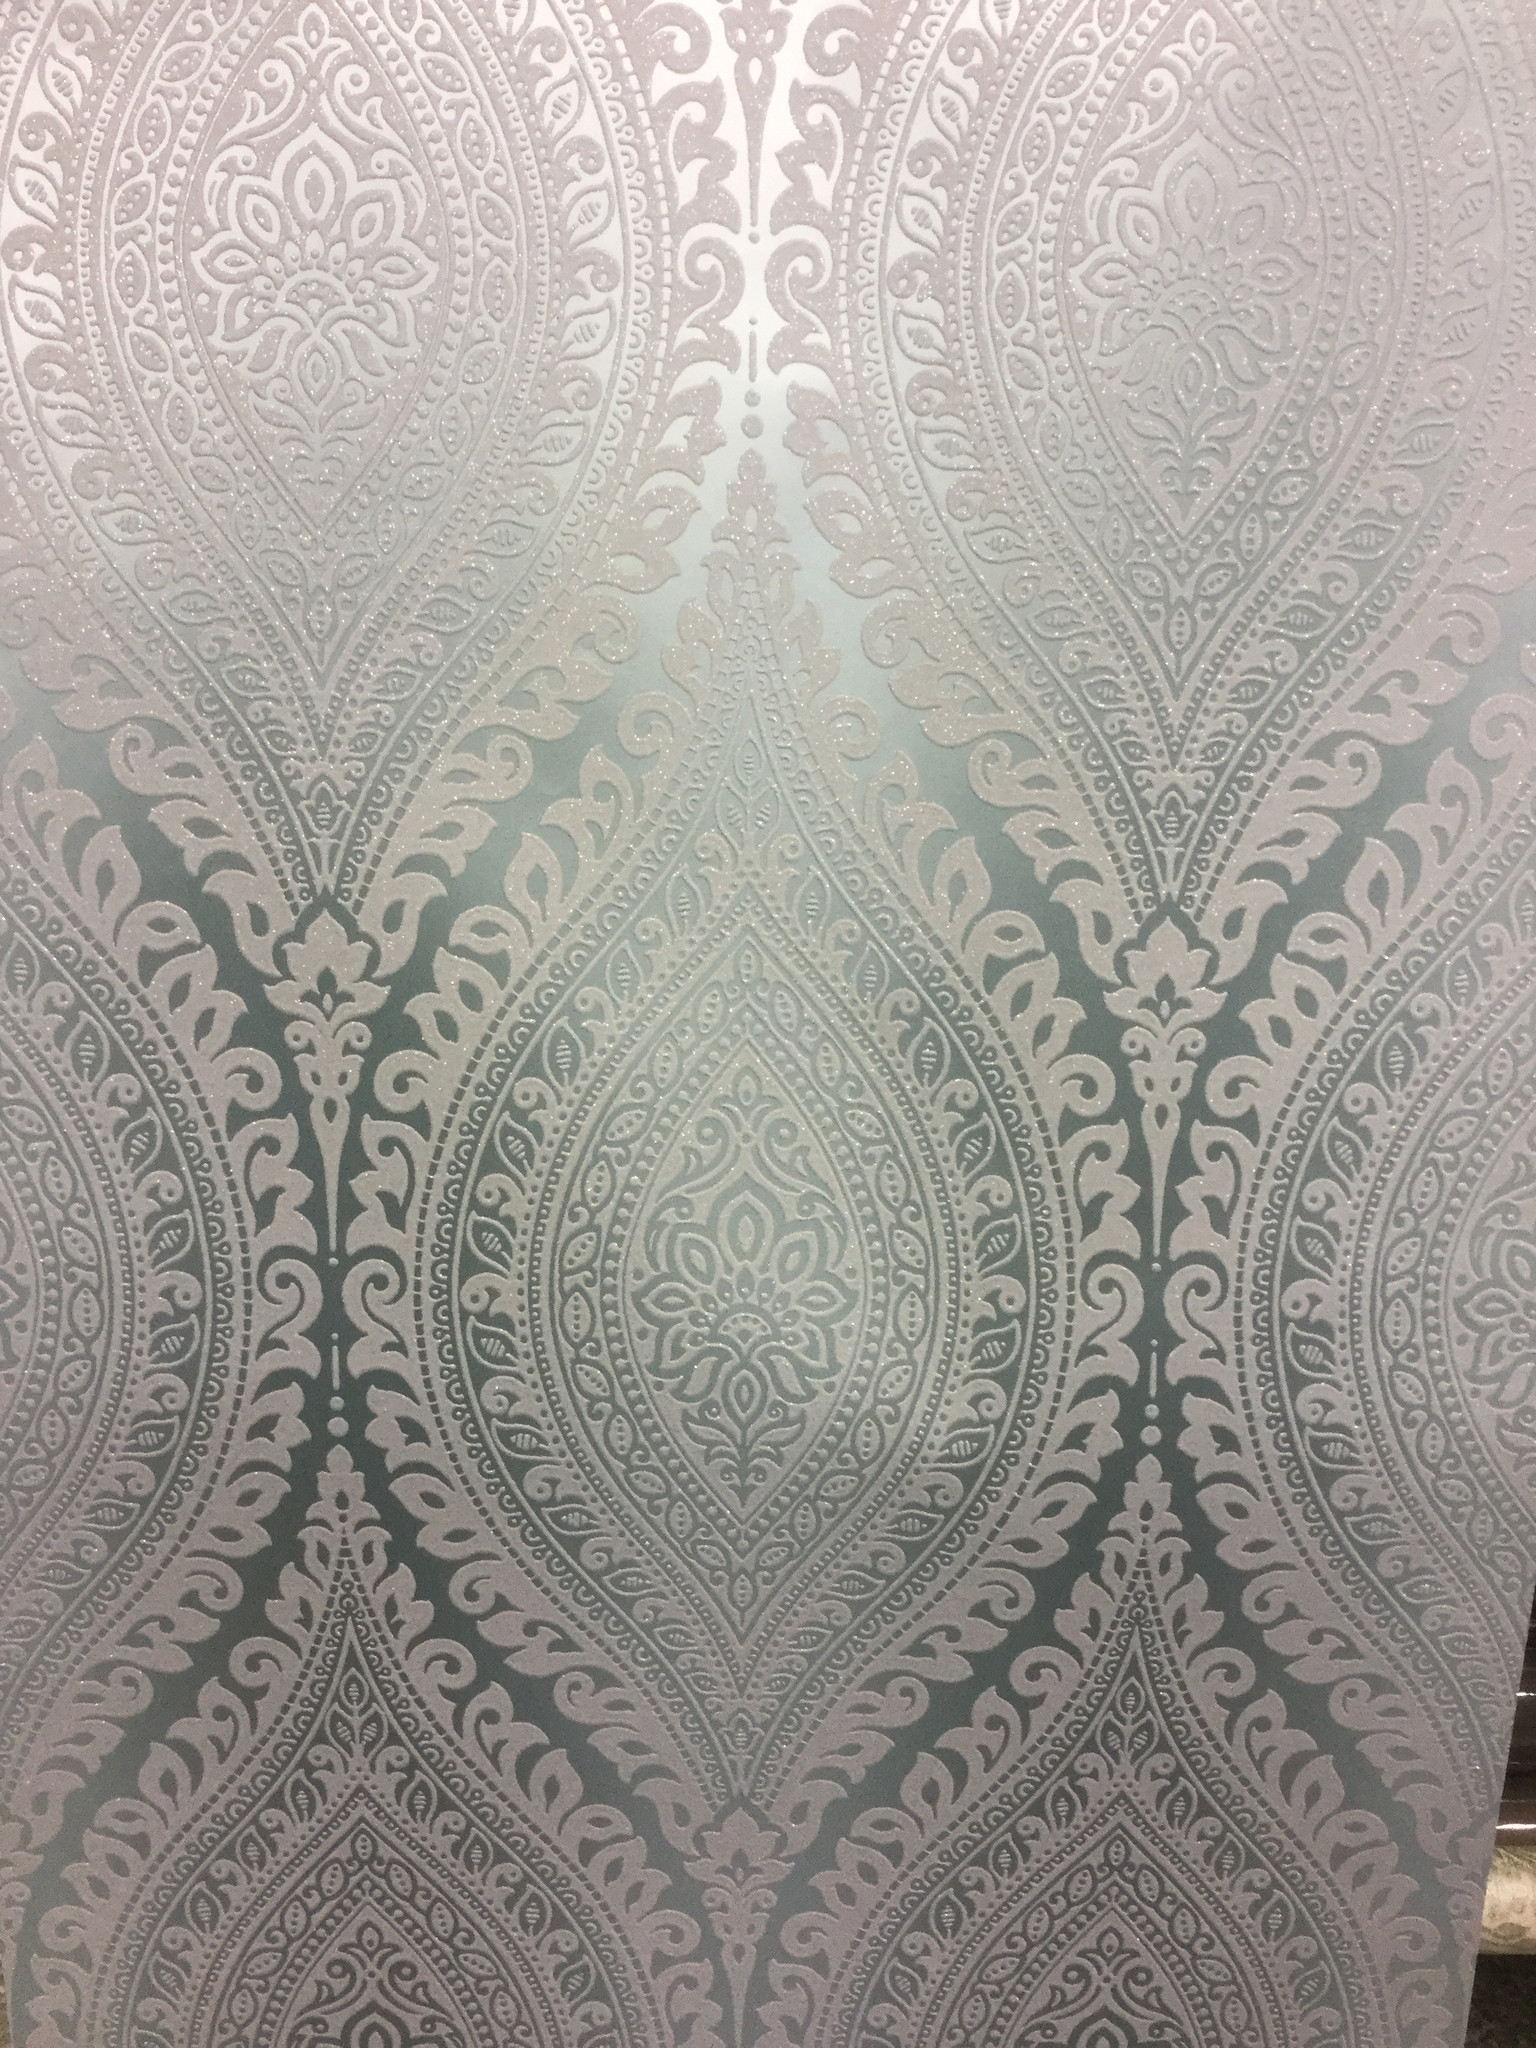 metallic damask wallpaper,wallpaper,pattern,design,visual arts,textile